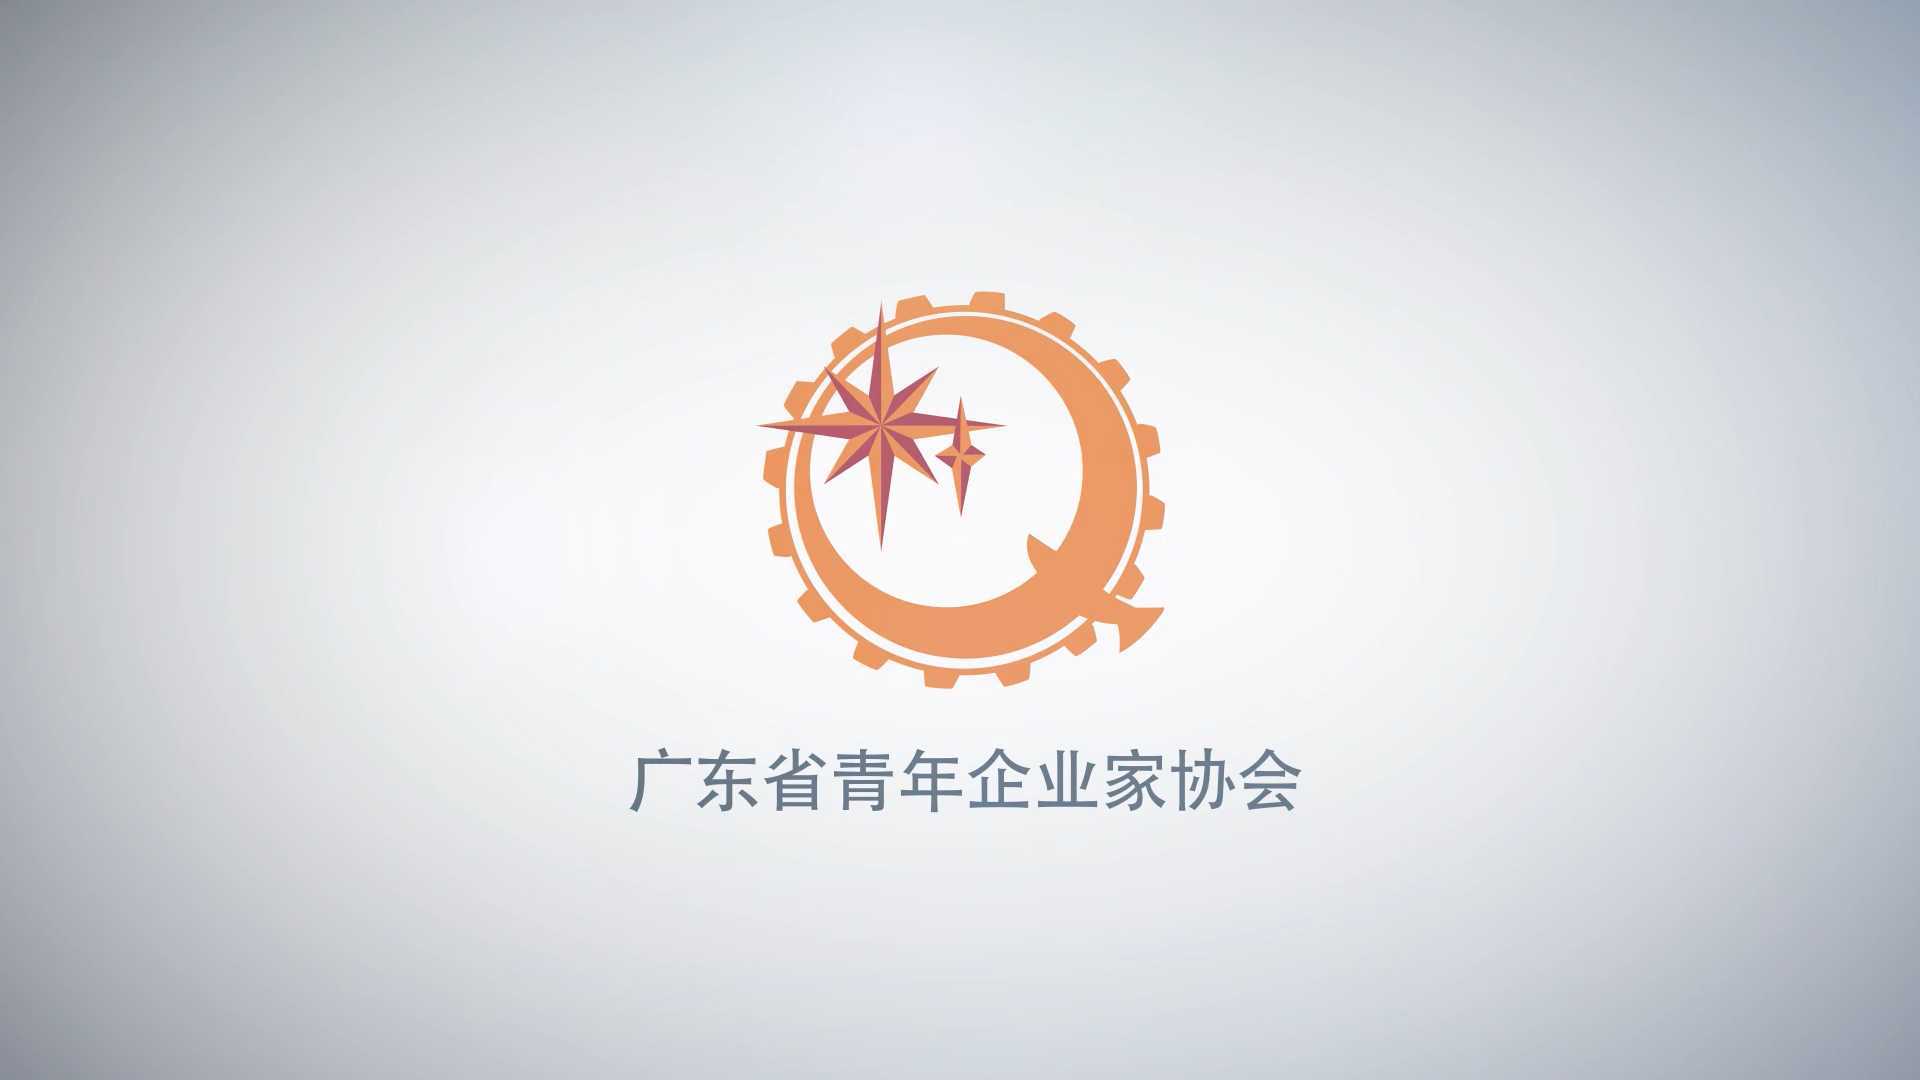 广东省青年企业家协会宣传片